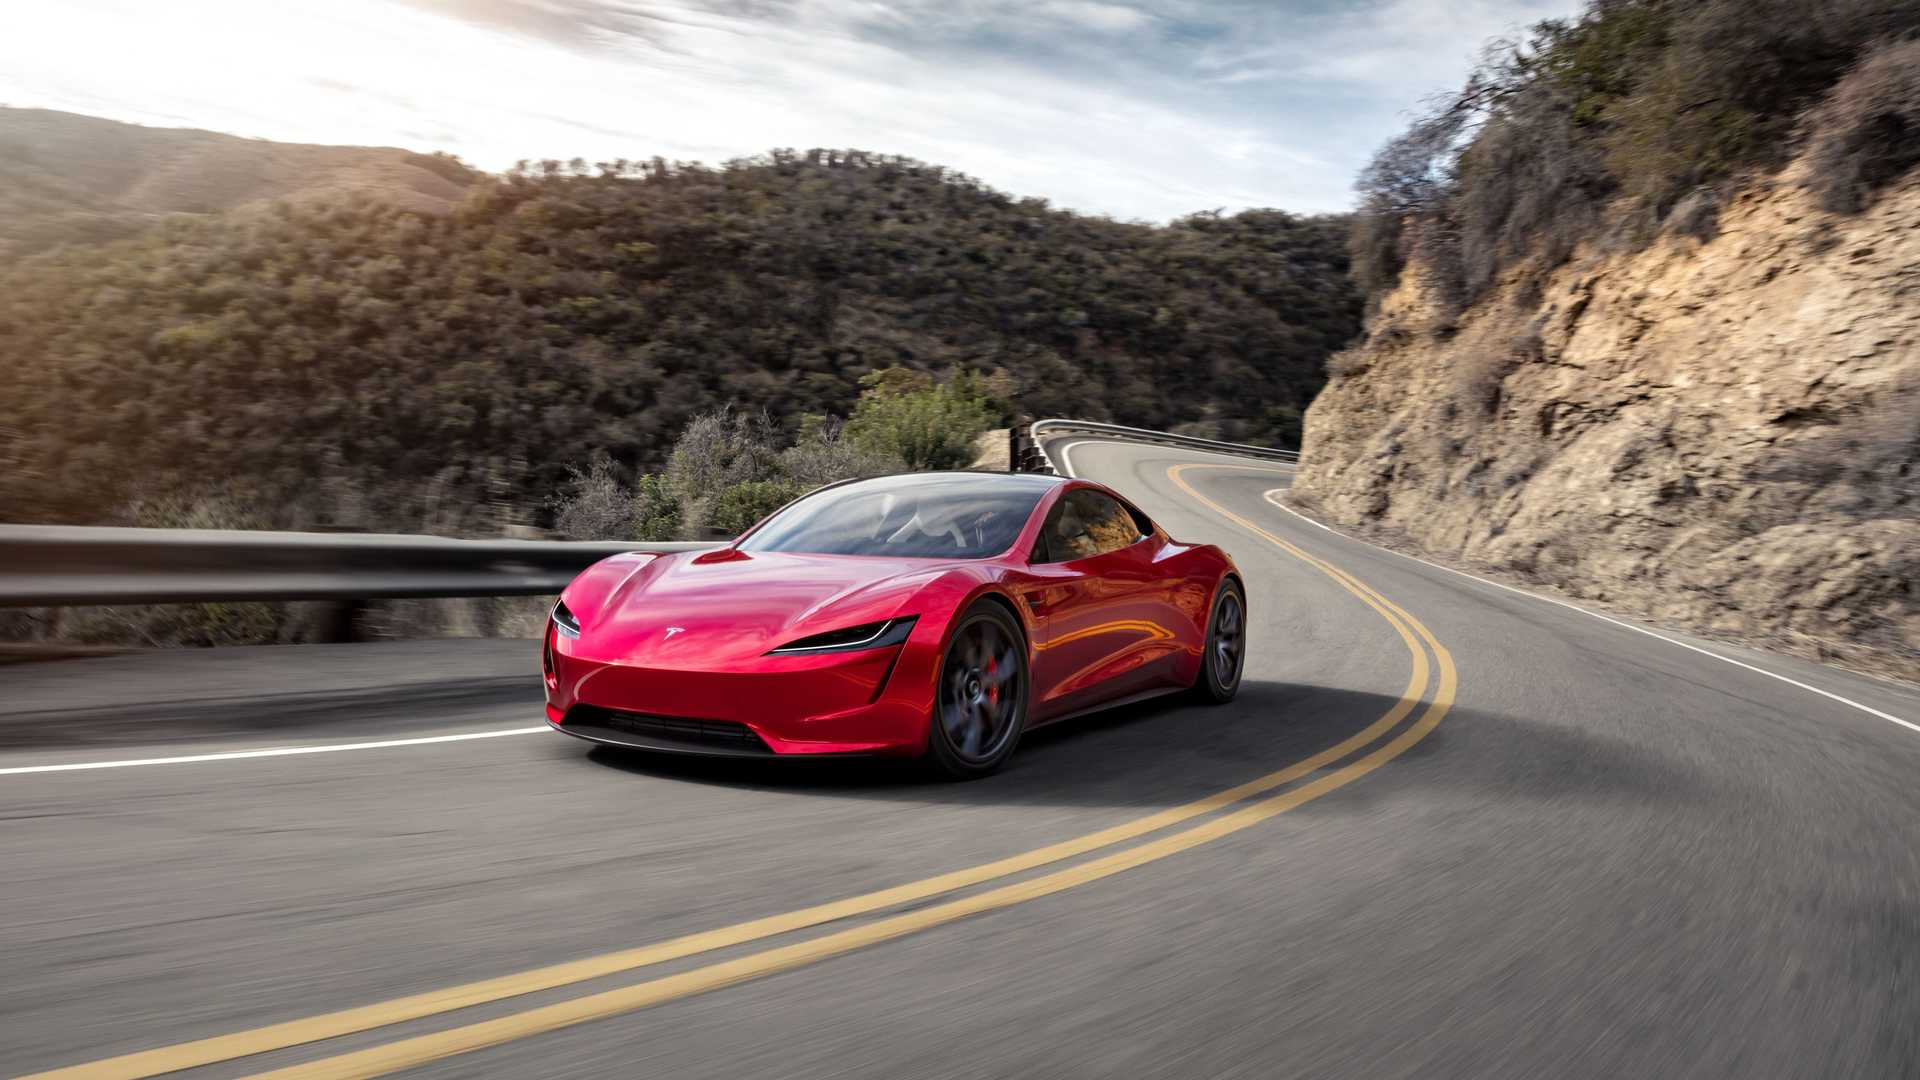 خودروی الکتریکی تسلا رودستر / Tesla Roadster قرمز رنگ در جاده